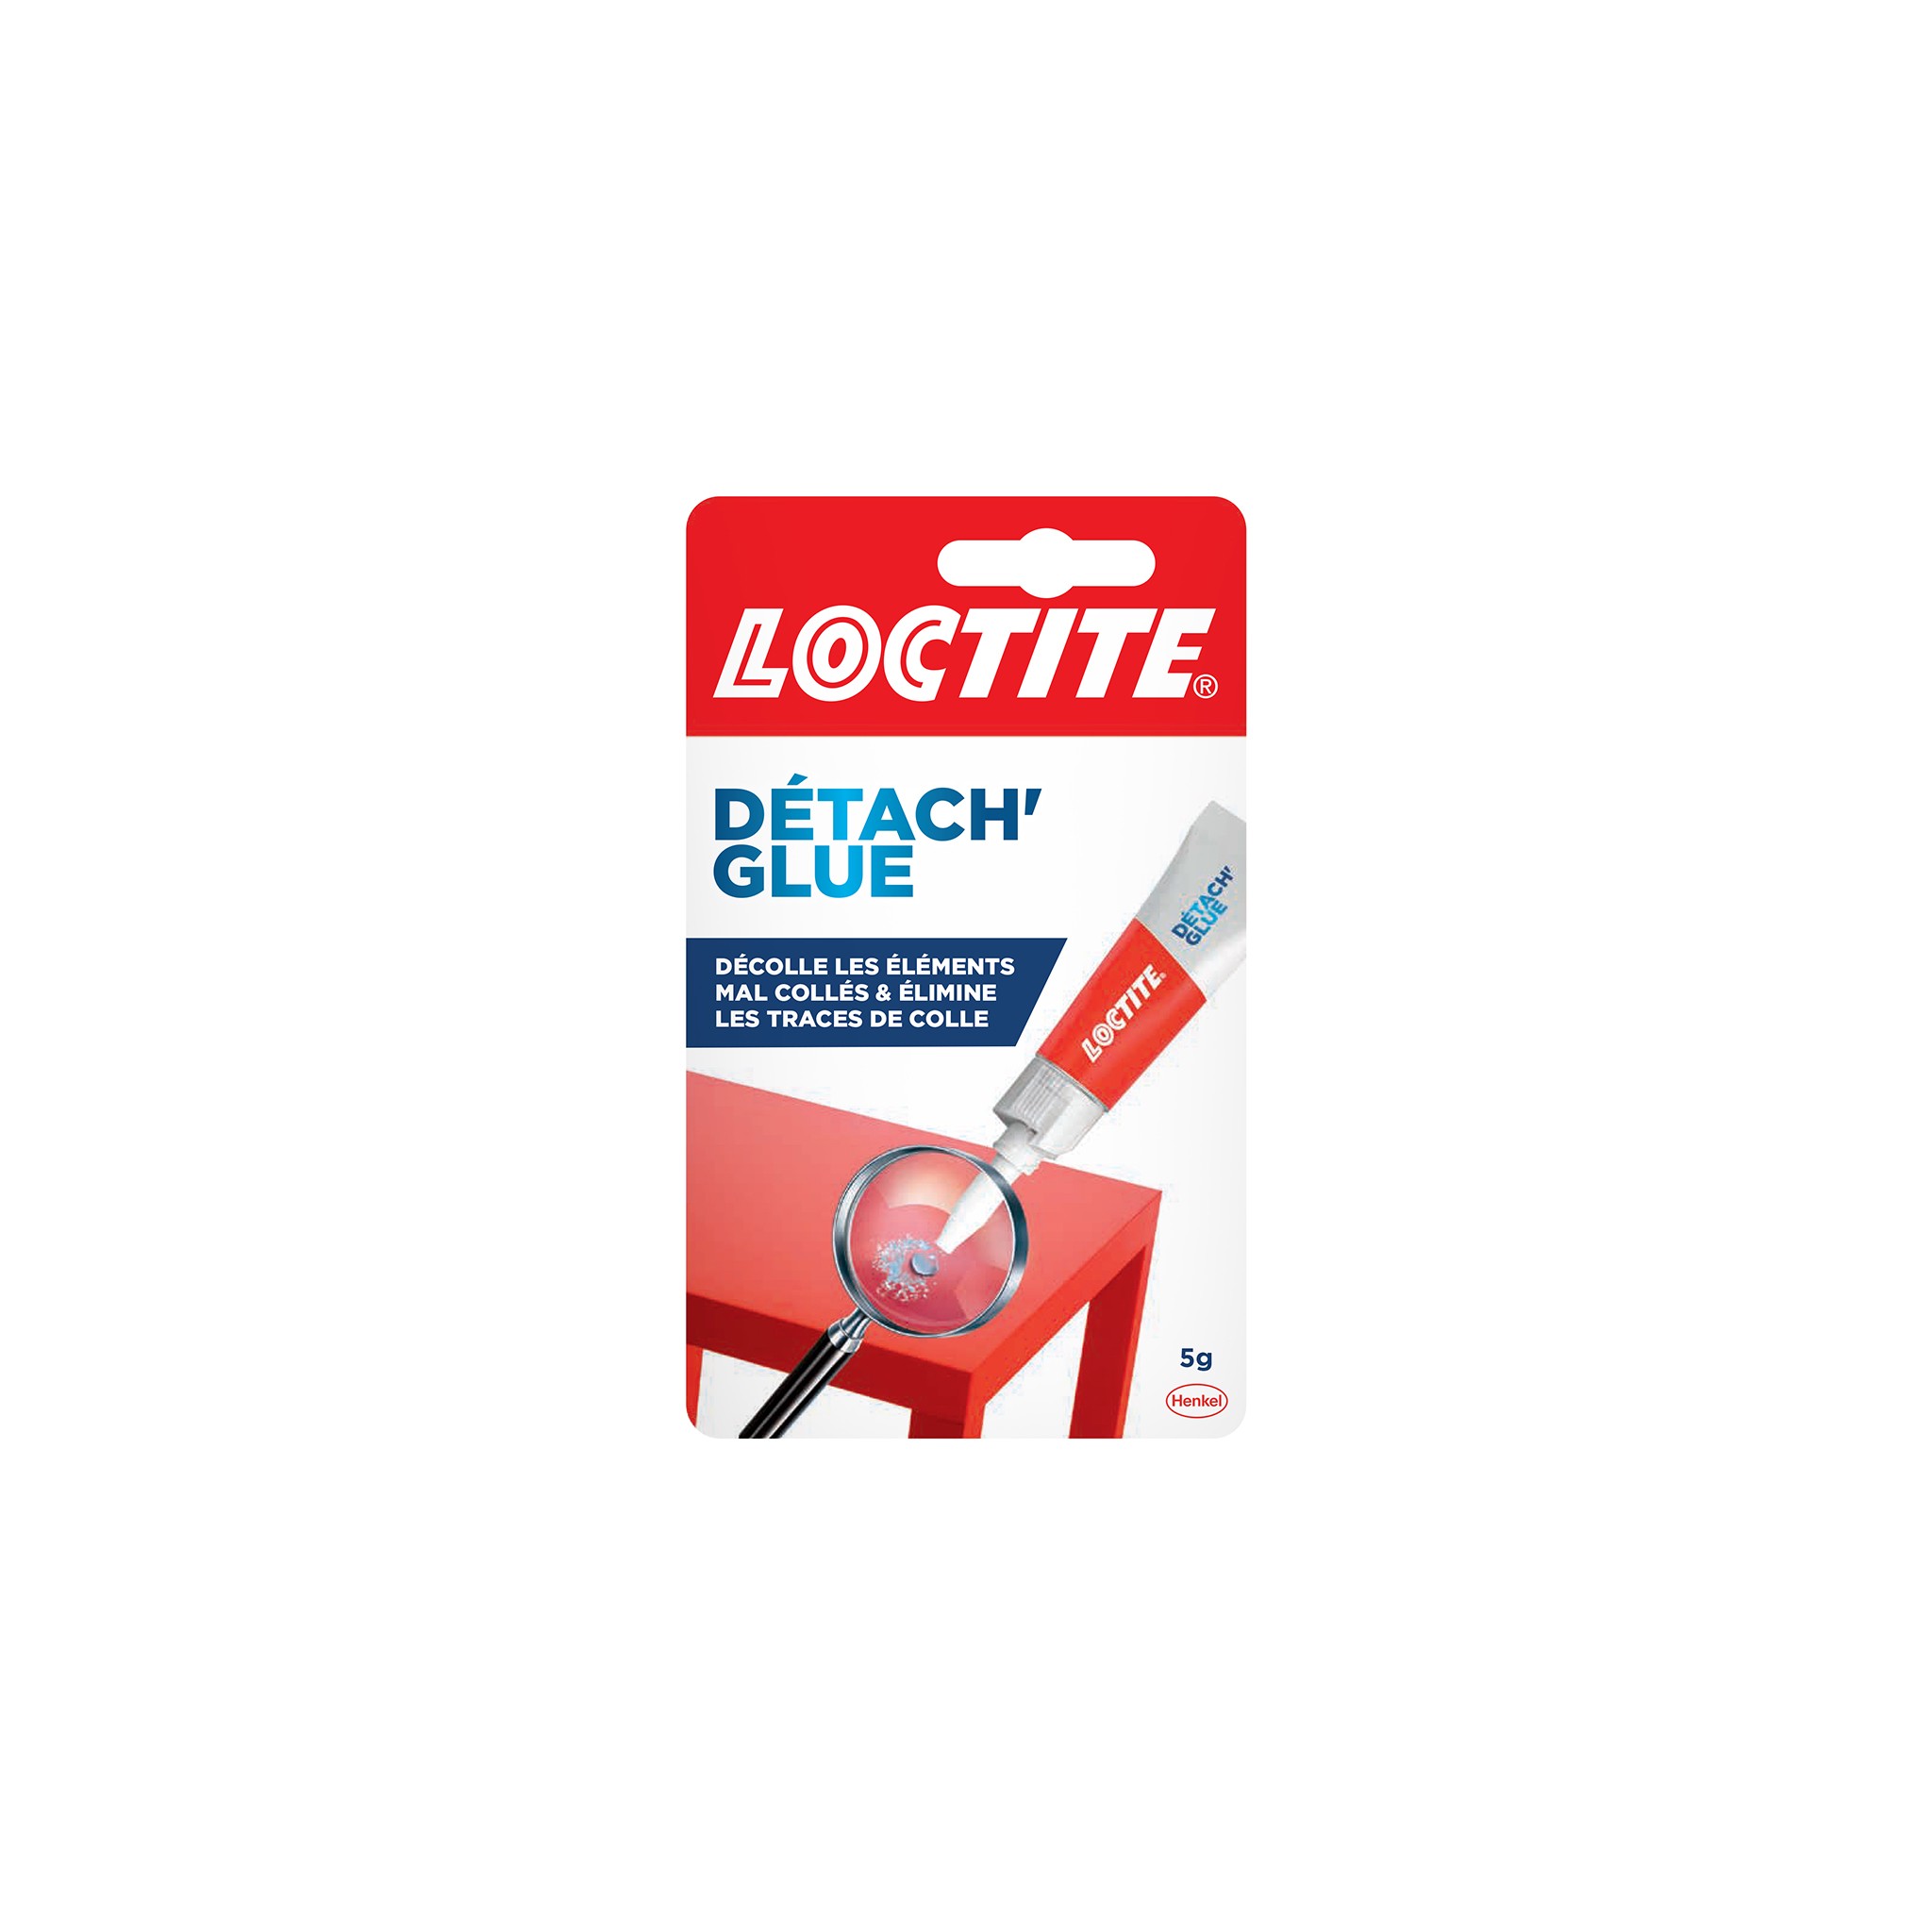 Loctite Superglue-3 Detach' Glue